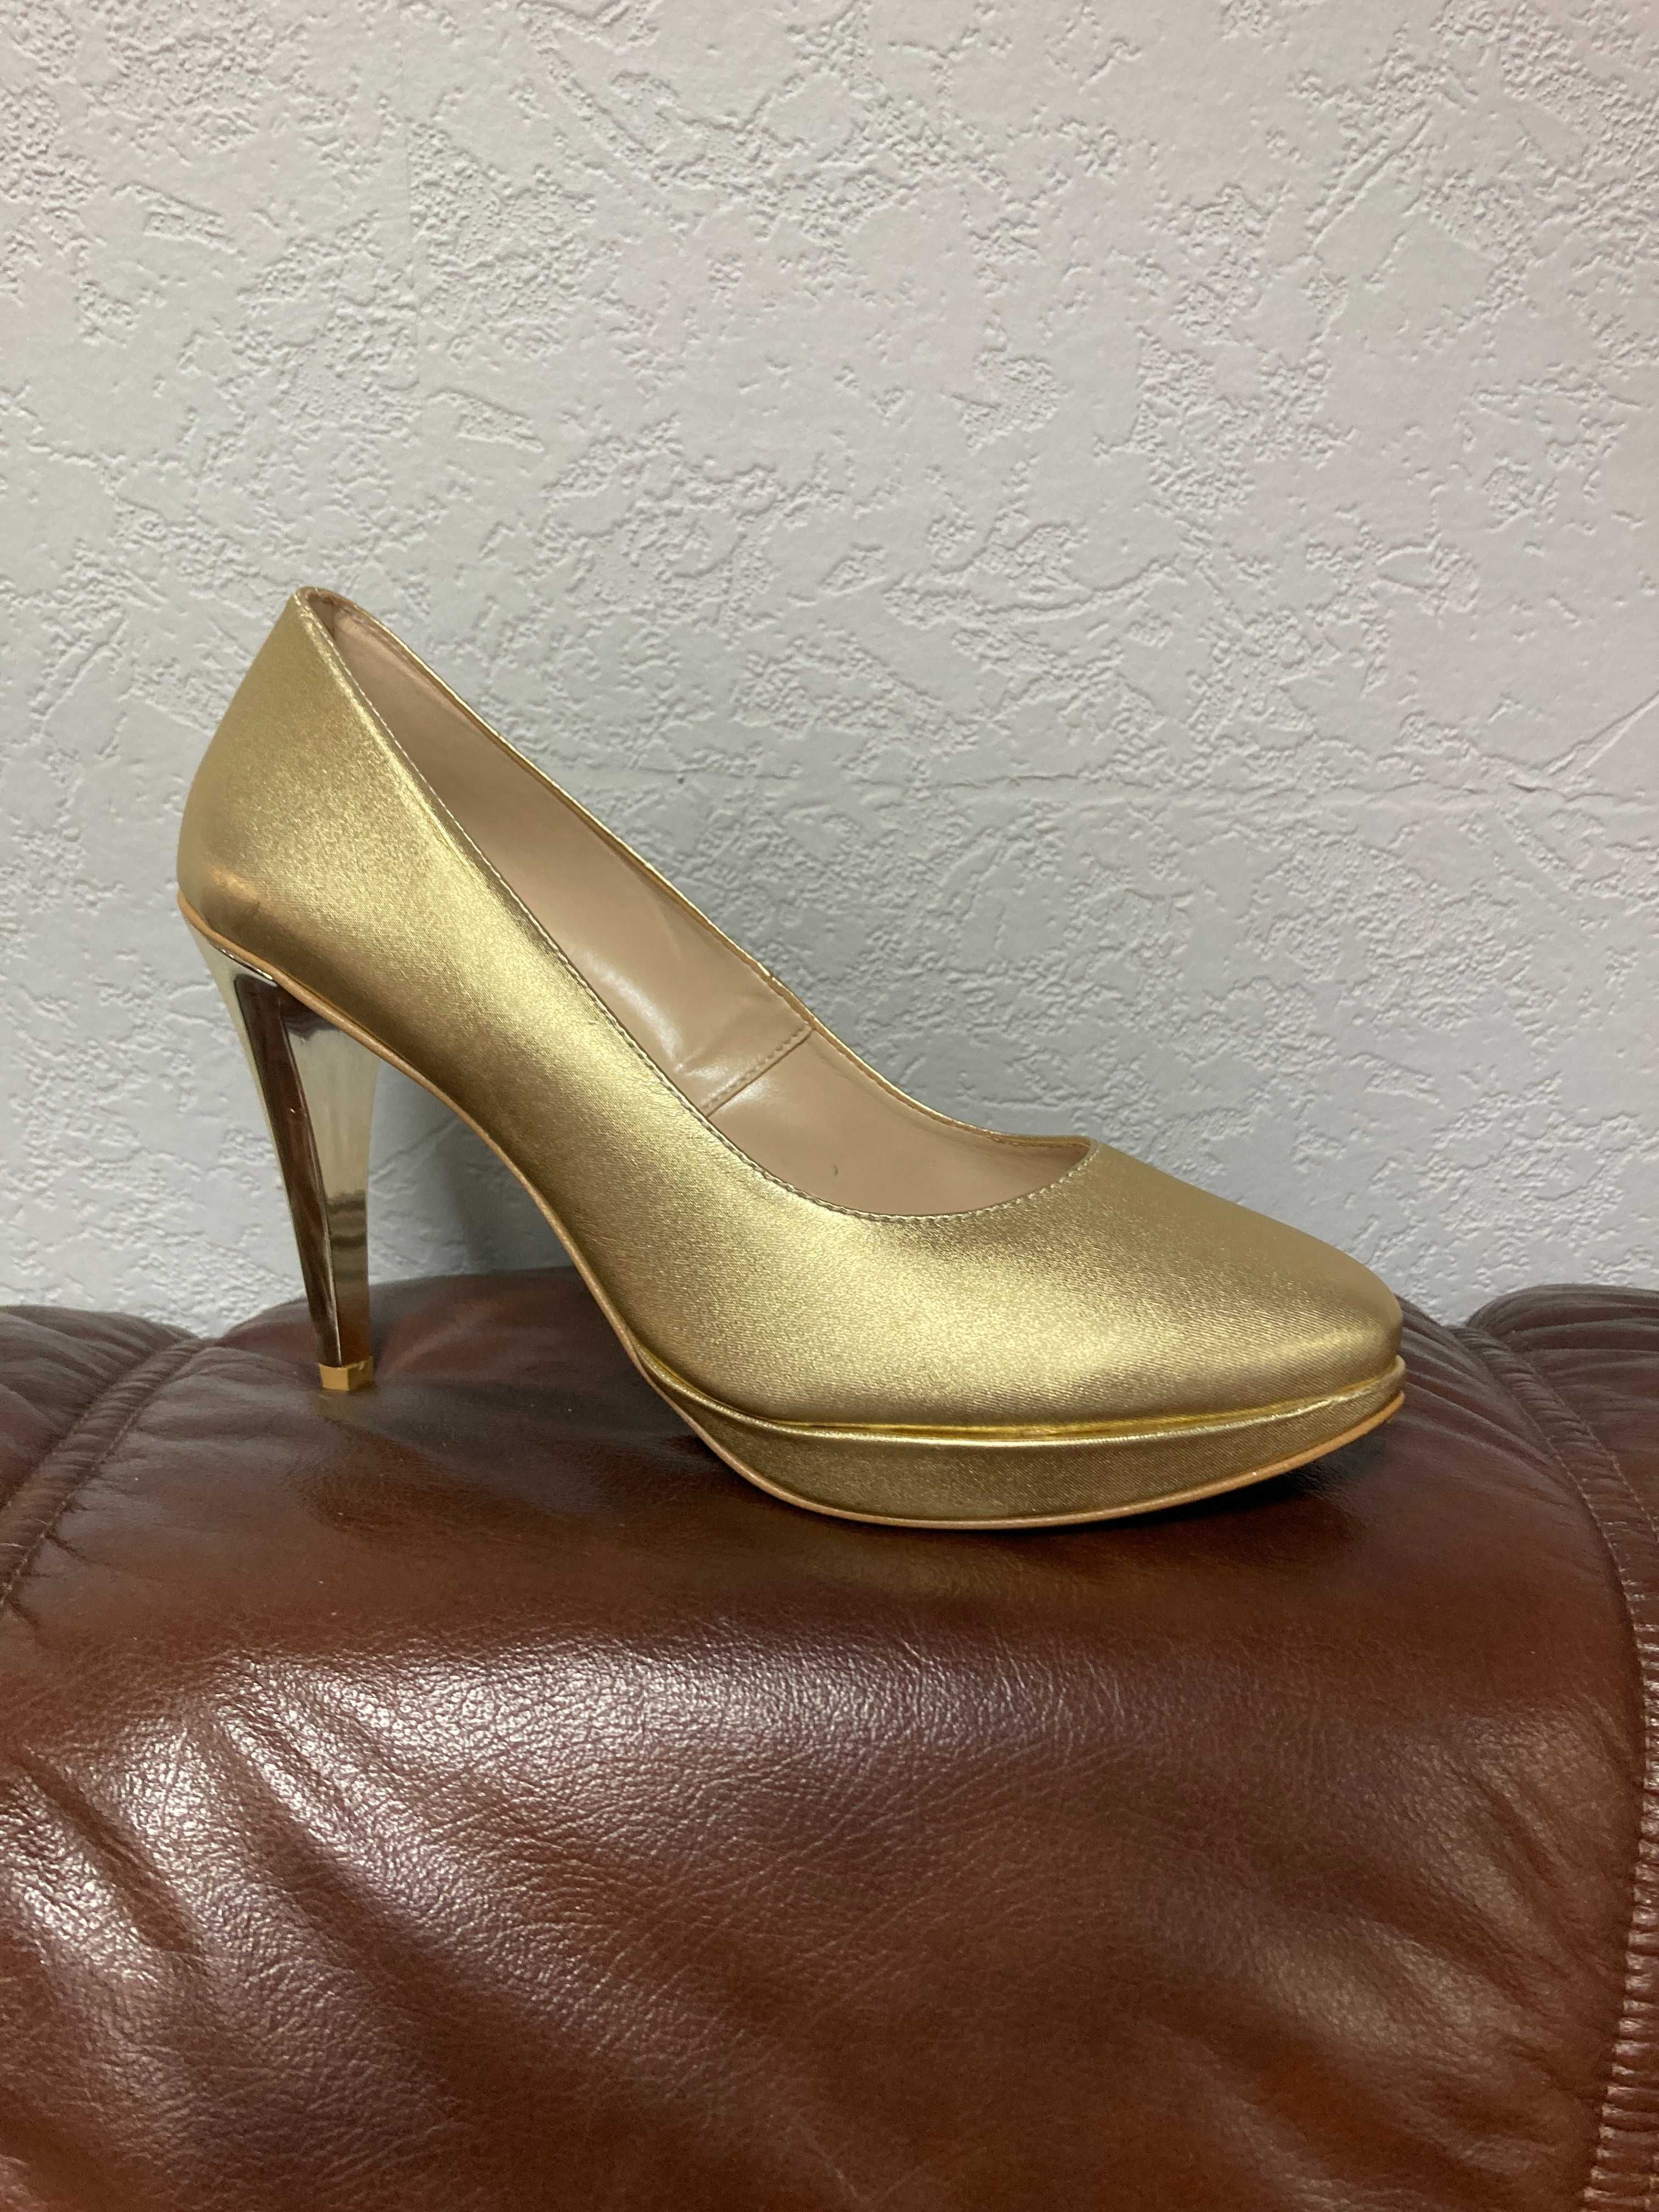 Nowe buty, czółenka złote, obcas lustro, r. 40, wys. 10 cm, wyprzedaż